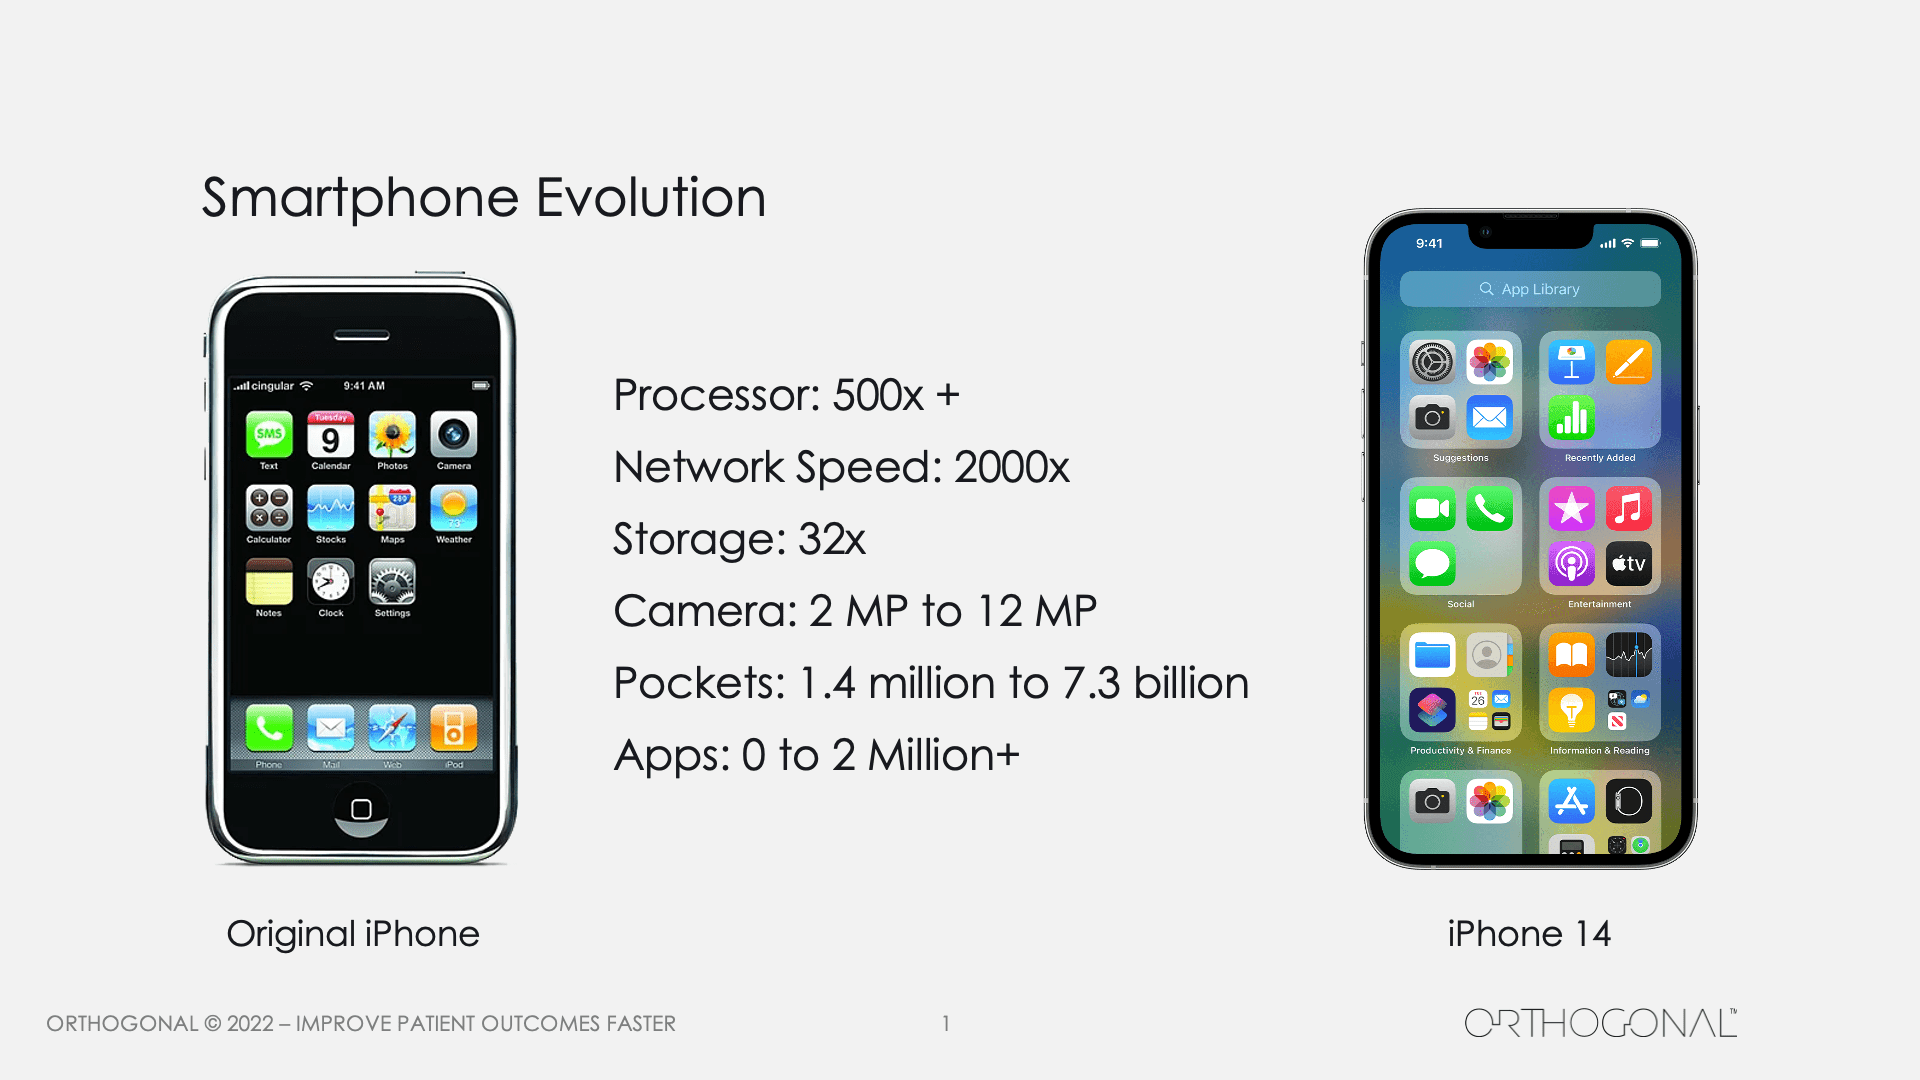 Smartphone Evolution